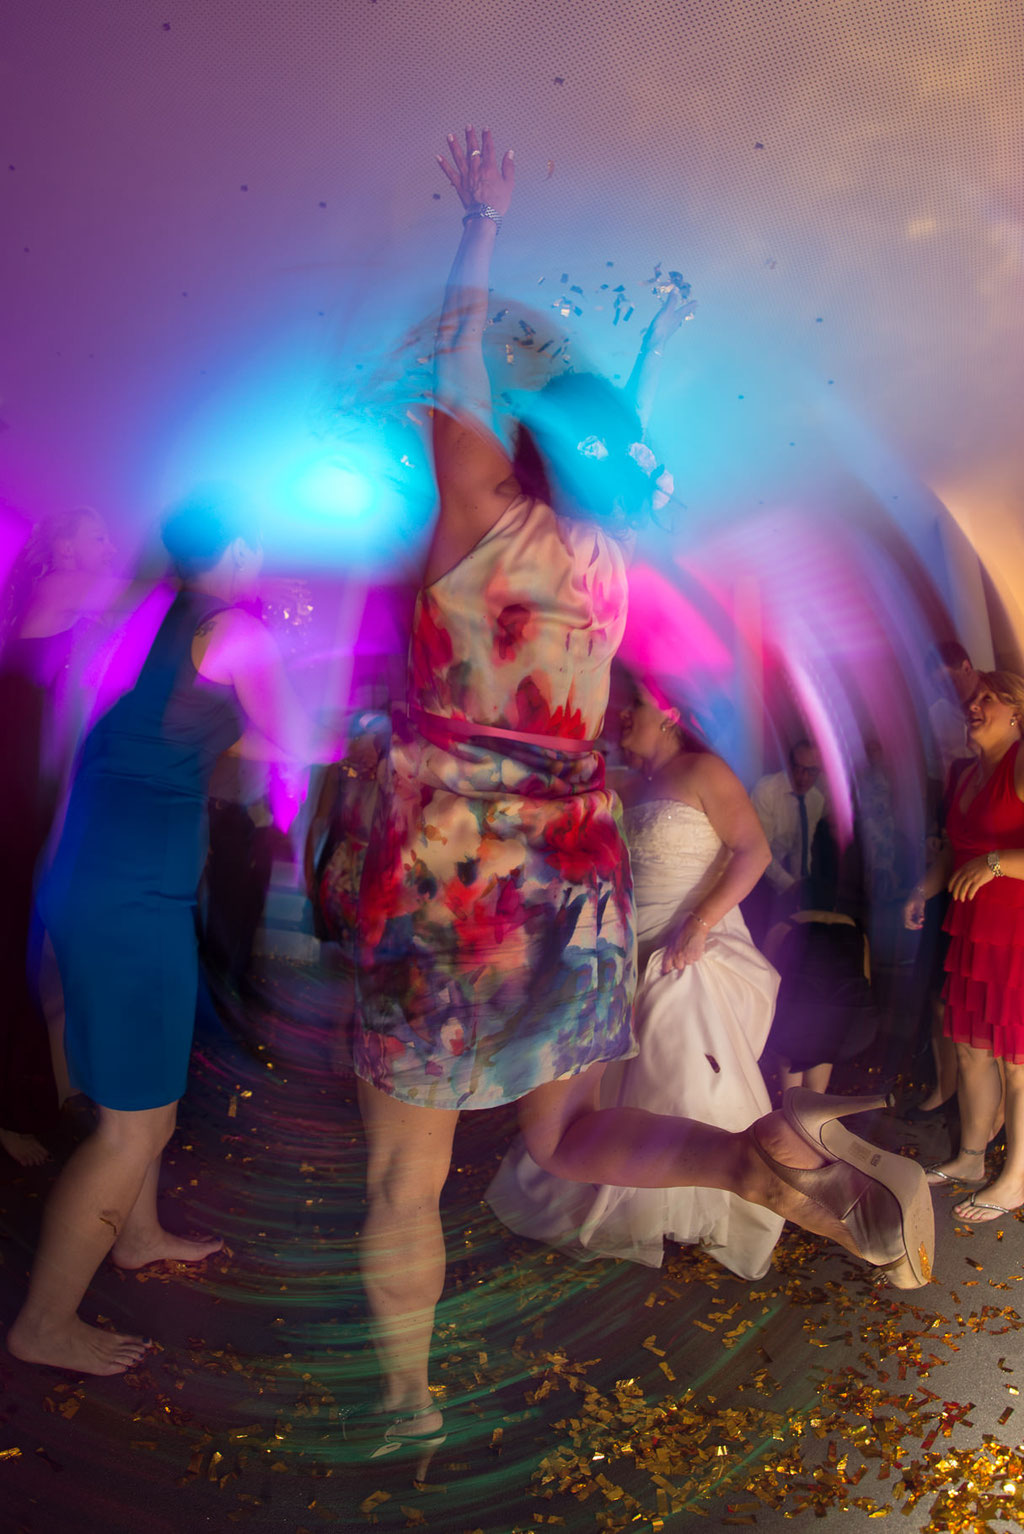 Hochzeitsfotograf Rhein Main - Hochzeitsparty ist in vollem Gang, tanzende Menschen